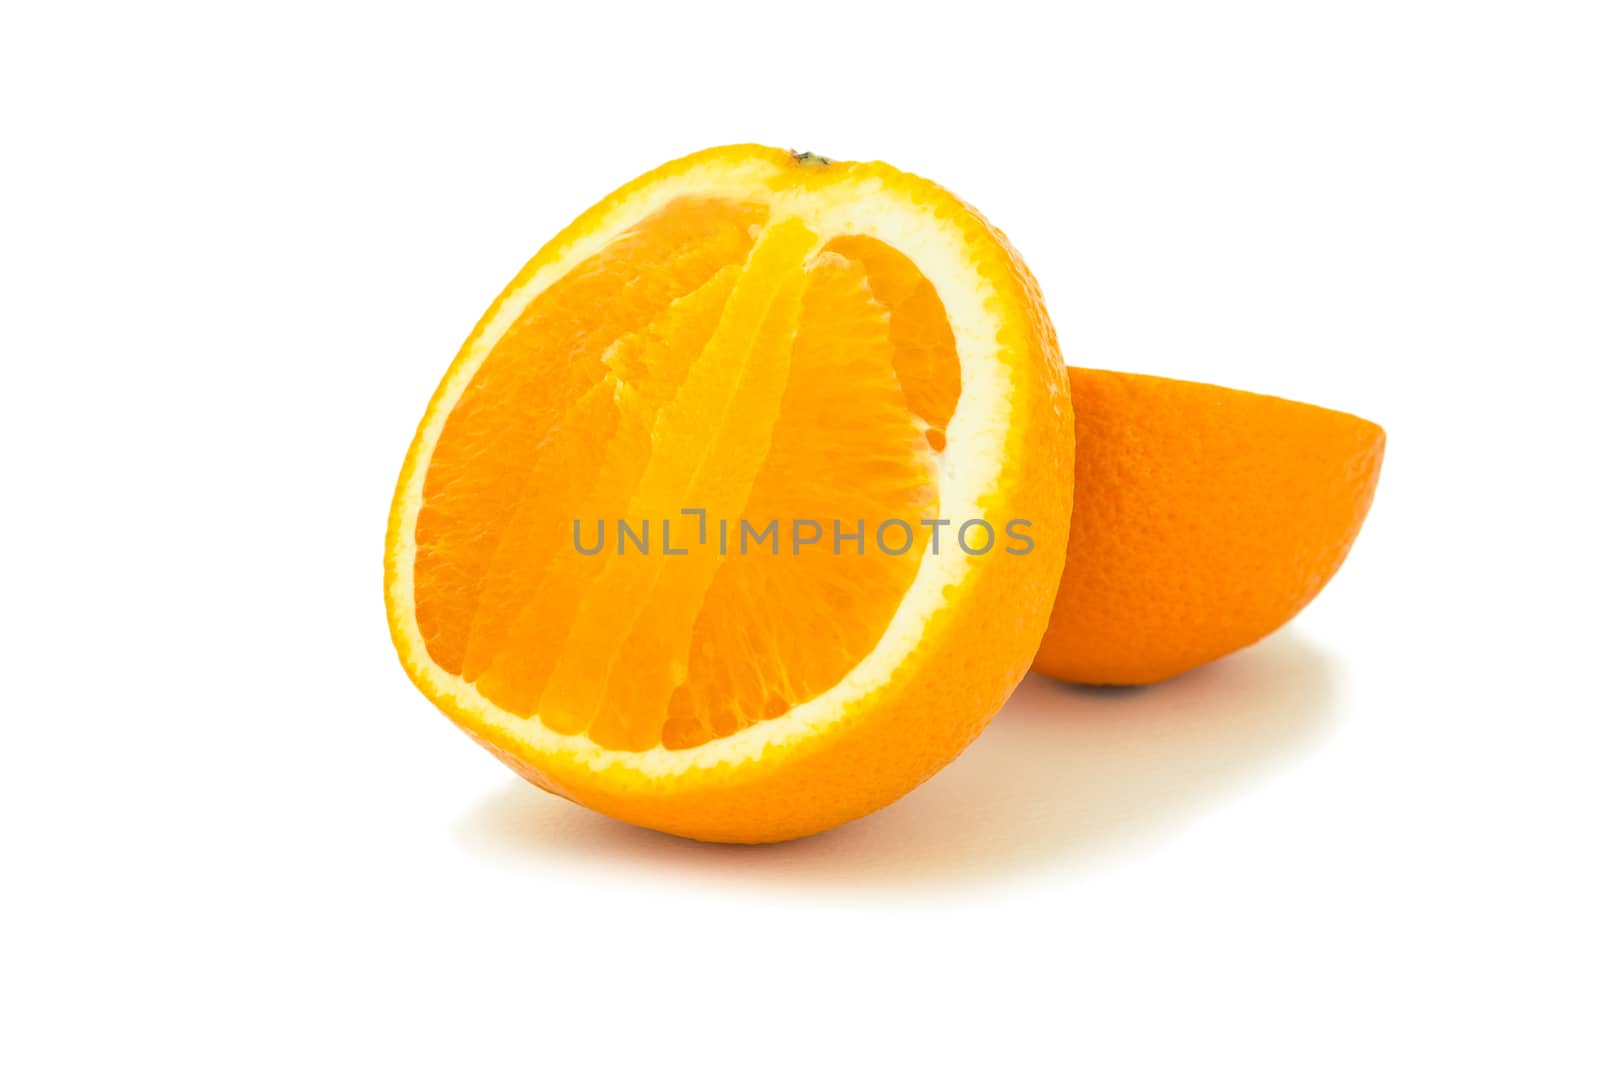 Orange fruit sliced isolated on white background